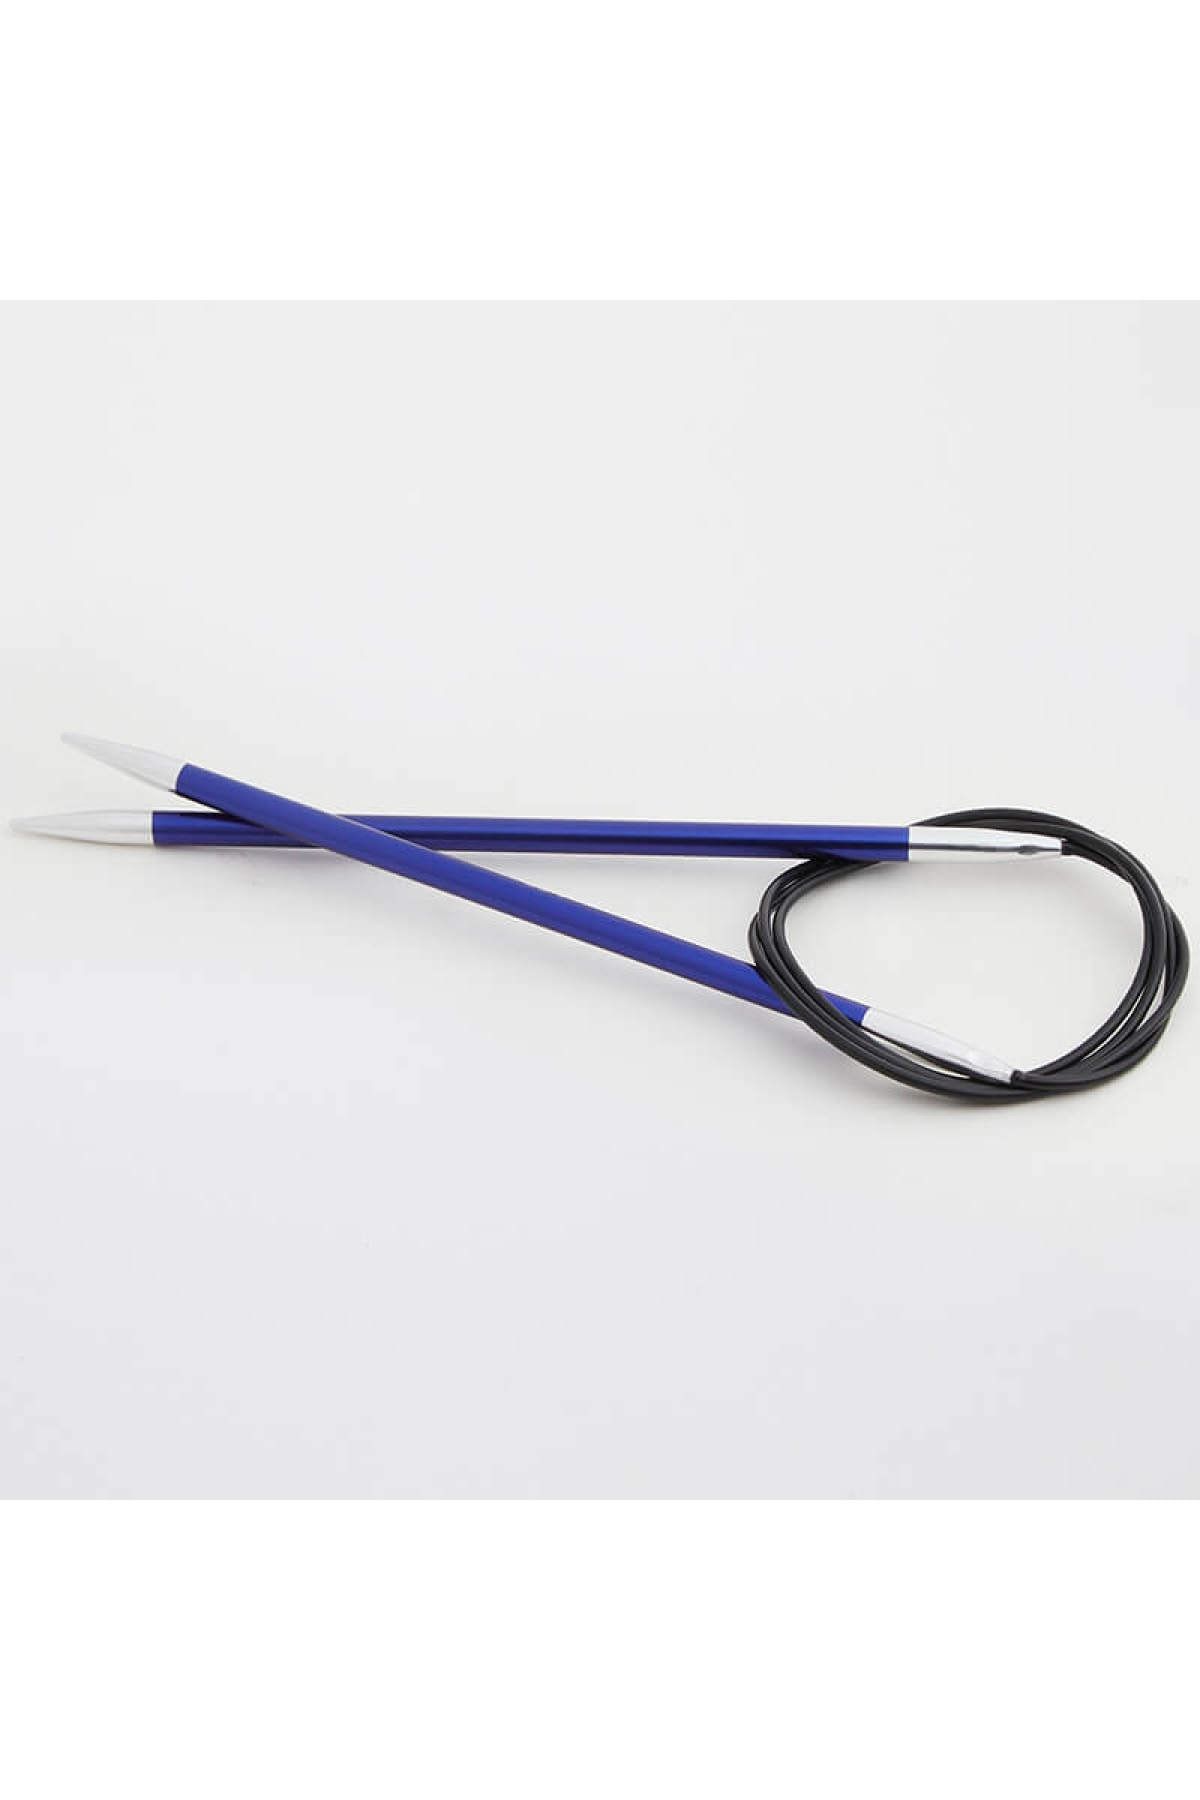 Knitpro Zing Sabit Misinalı Şiş 40cm / 4,50mm